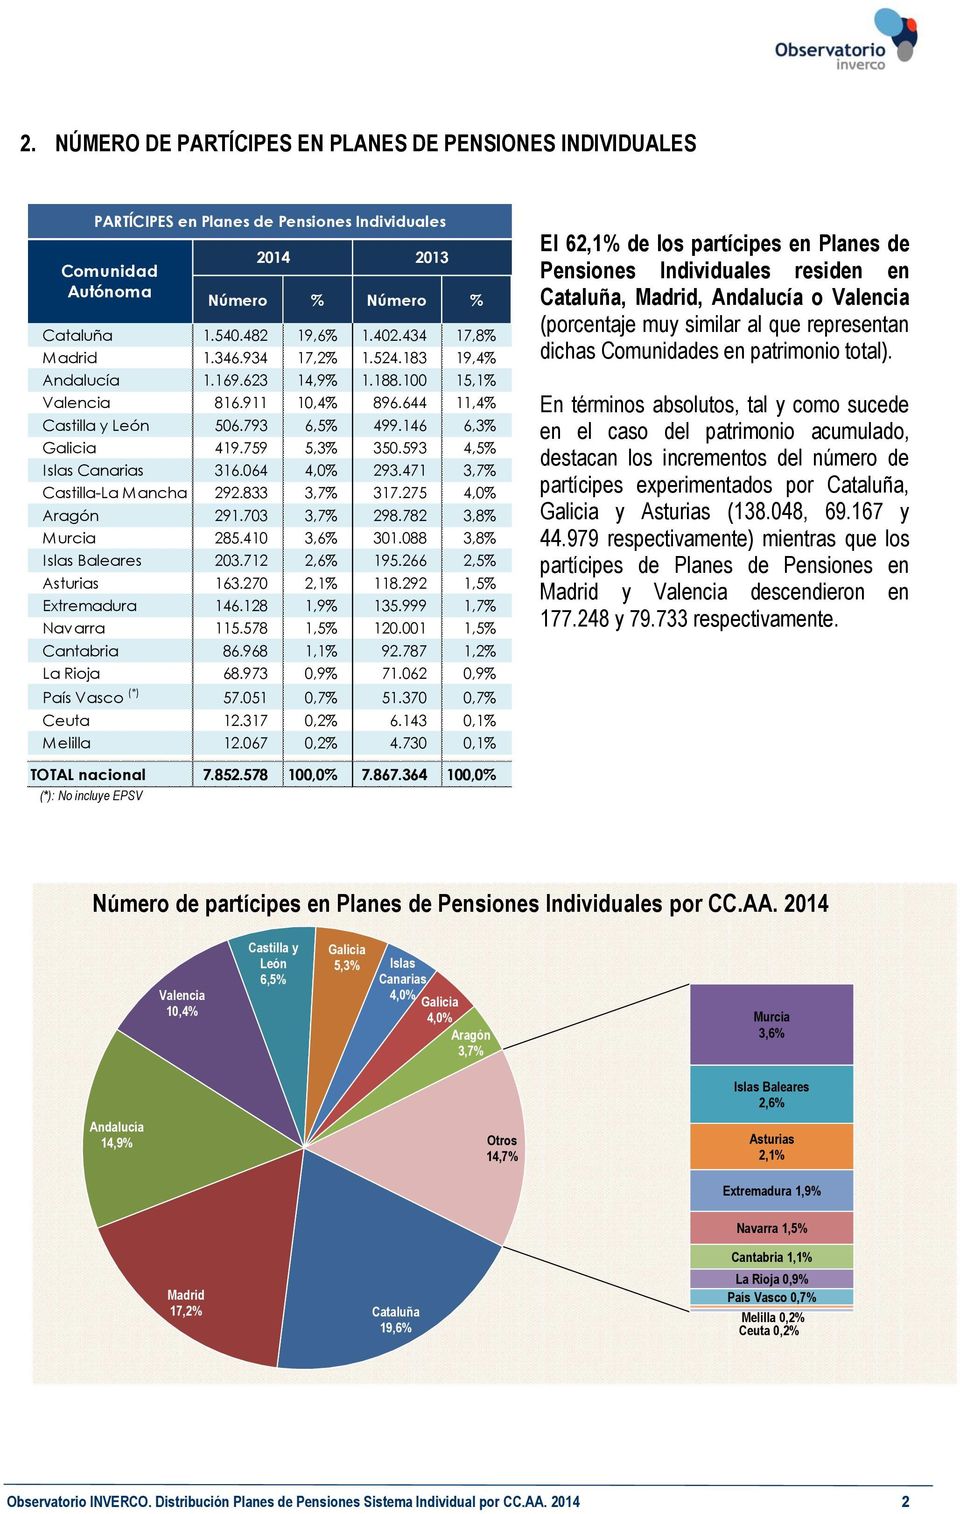 064 4,0% 293.471 3,7% Castilla-La Mancha 292.833 3,7% 317.275 4,0% Aragón 291.703 3,7% 298.782 3,8% Murcia 285.410 3,6% 301.088 3,8% Islas Baleares 203.712 2,6% 195.266 2,5% Asturias 163.270 2,1% 118.